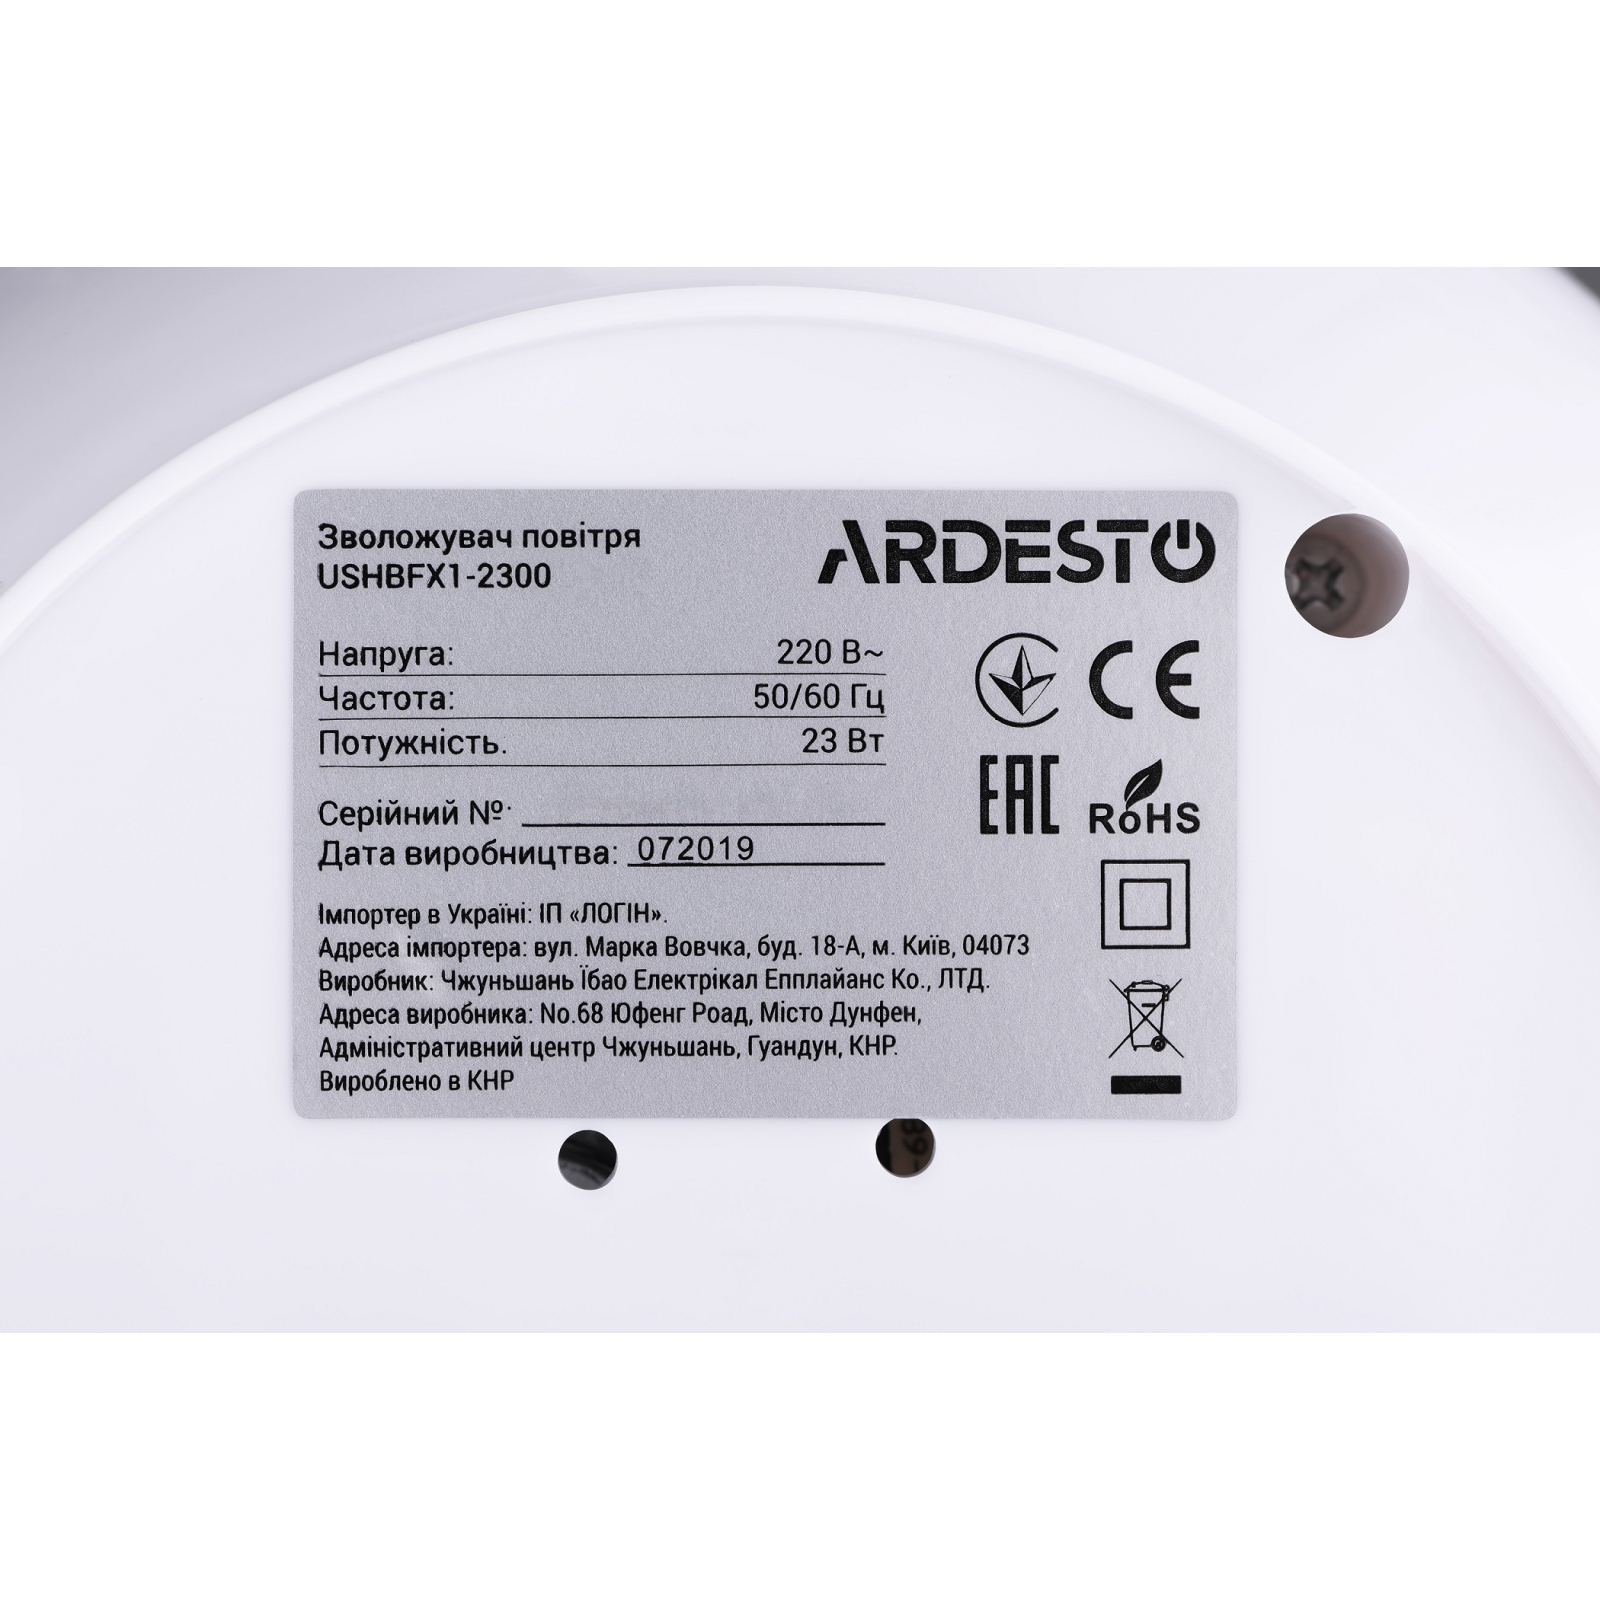 Зволожувач повітря Ardesto USHBFX1-2300-DARK-WOOD зображення 6